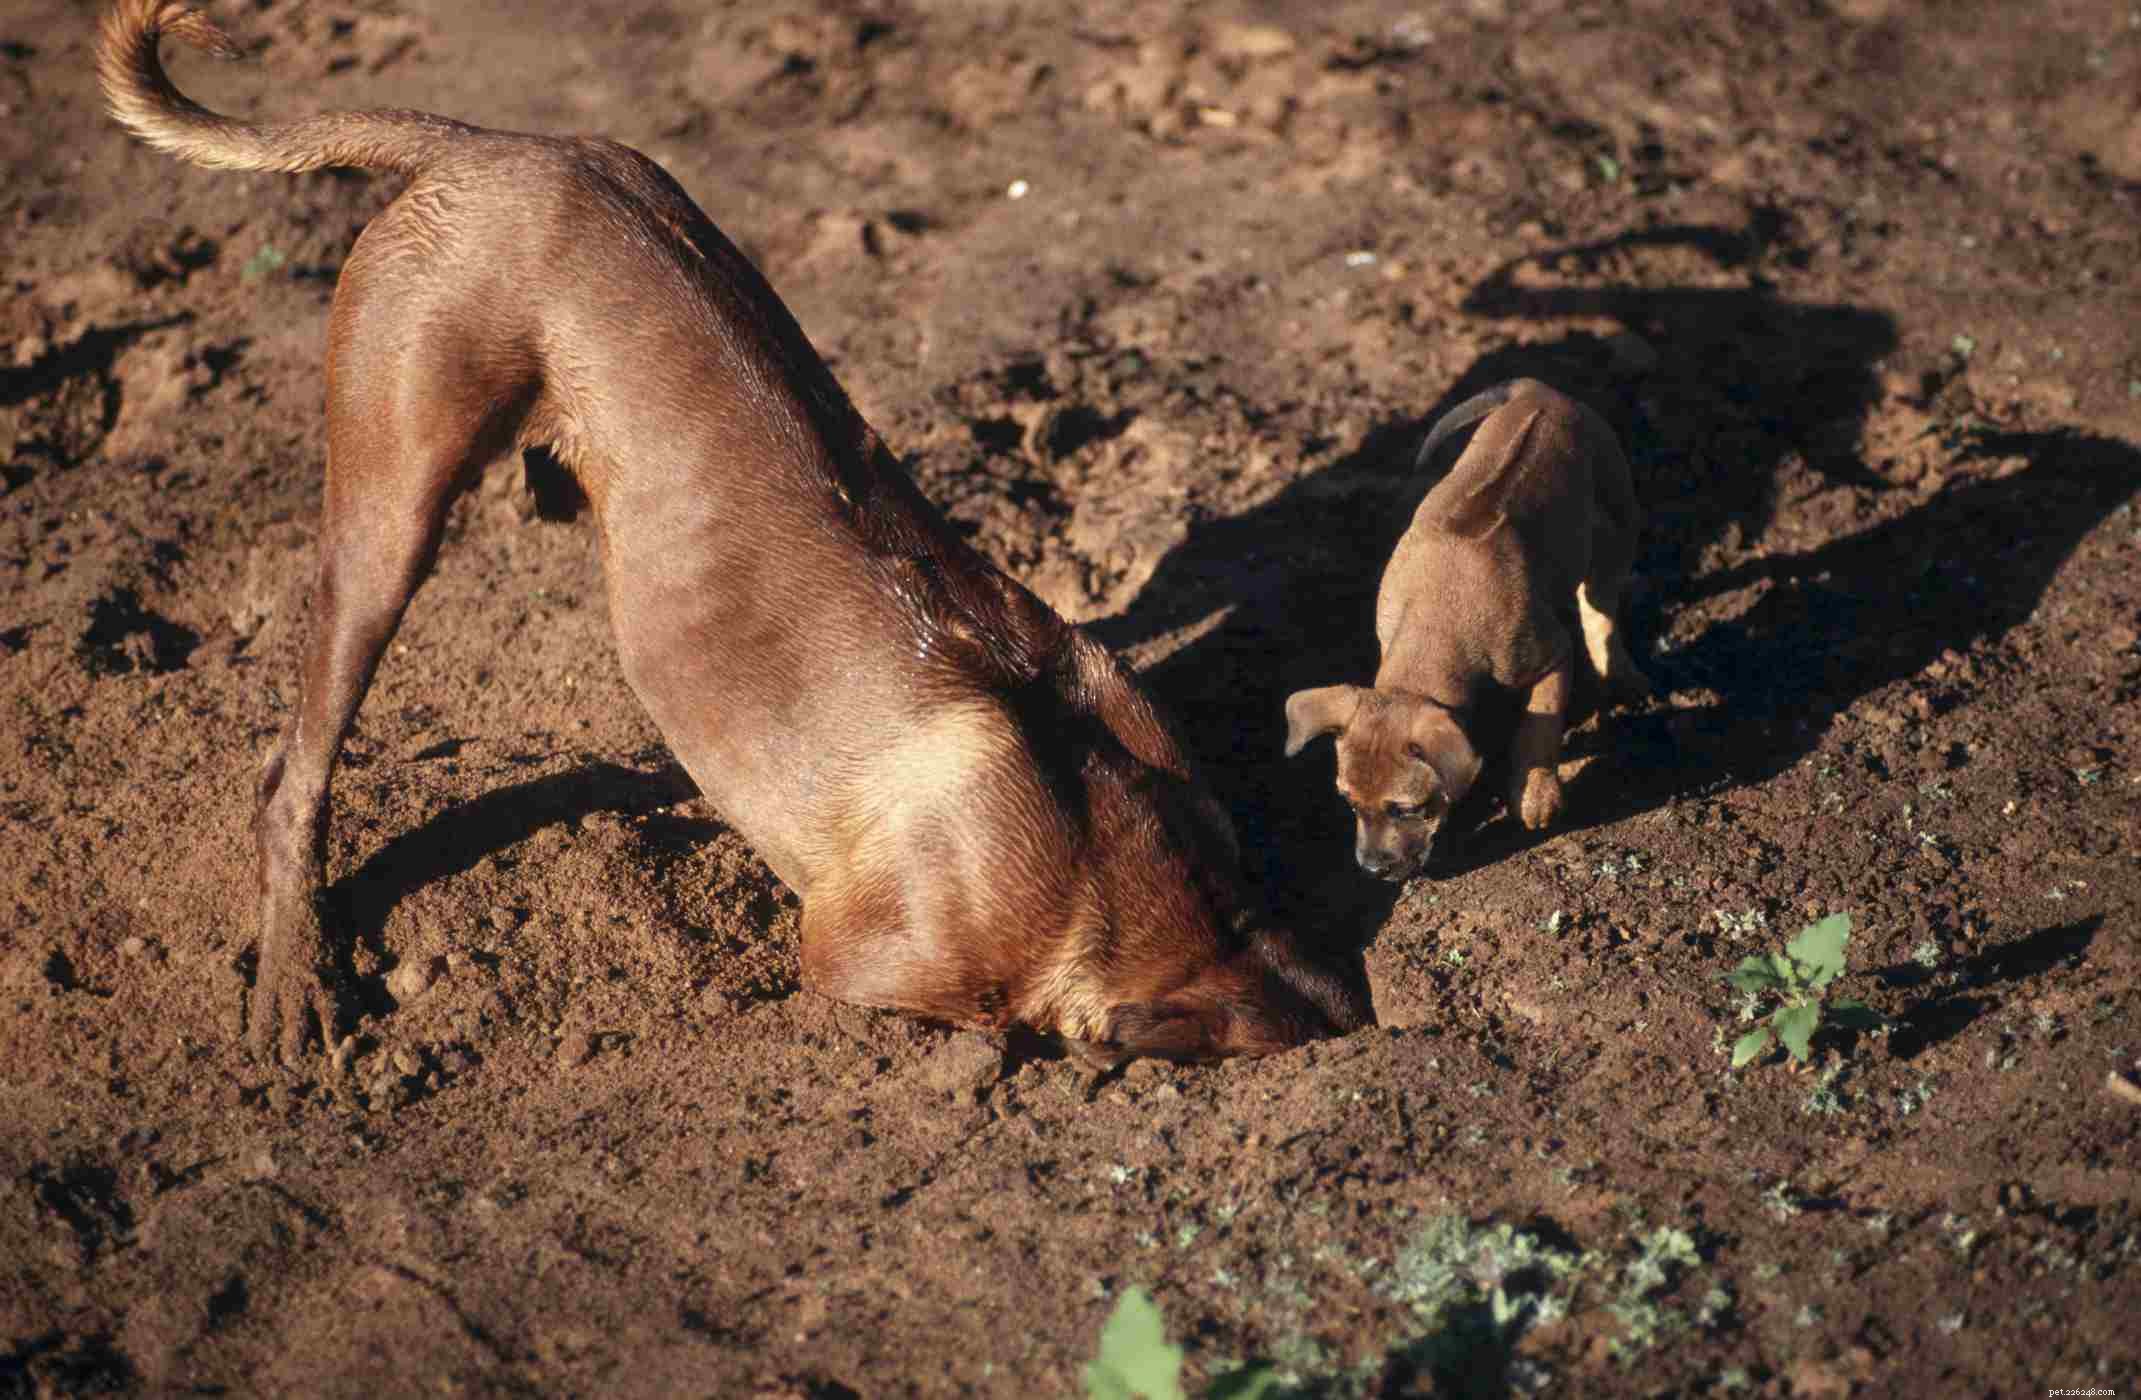 Rhodesian Ridgeback:características e cuidados da raça do cão